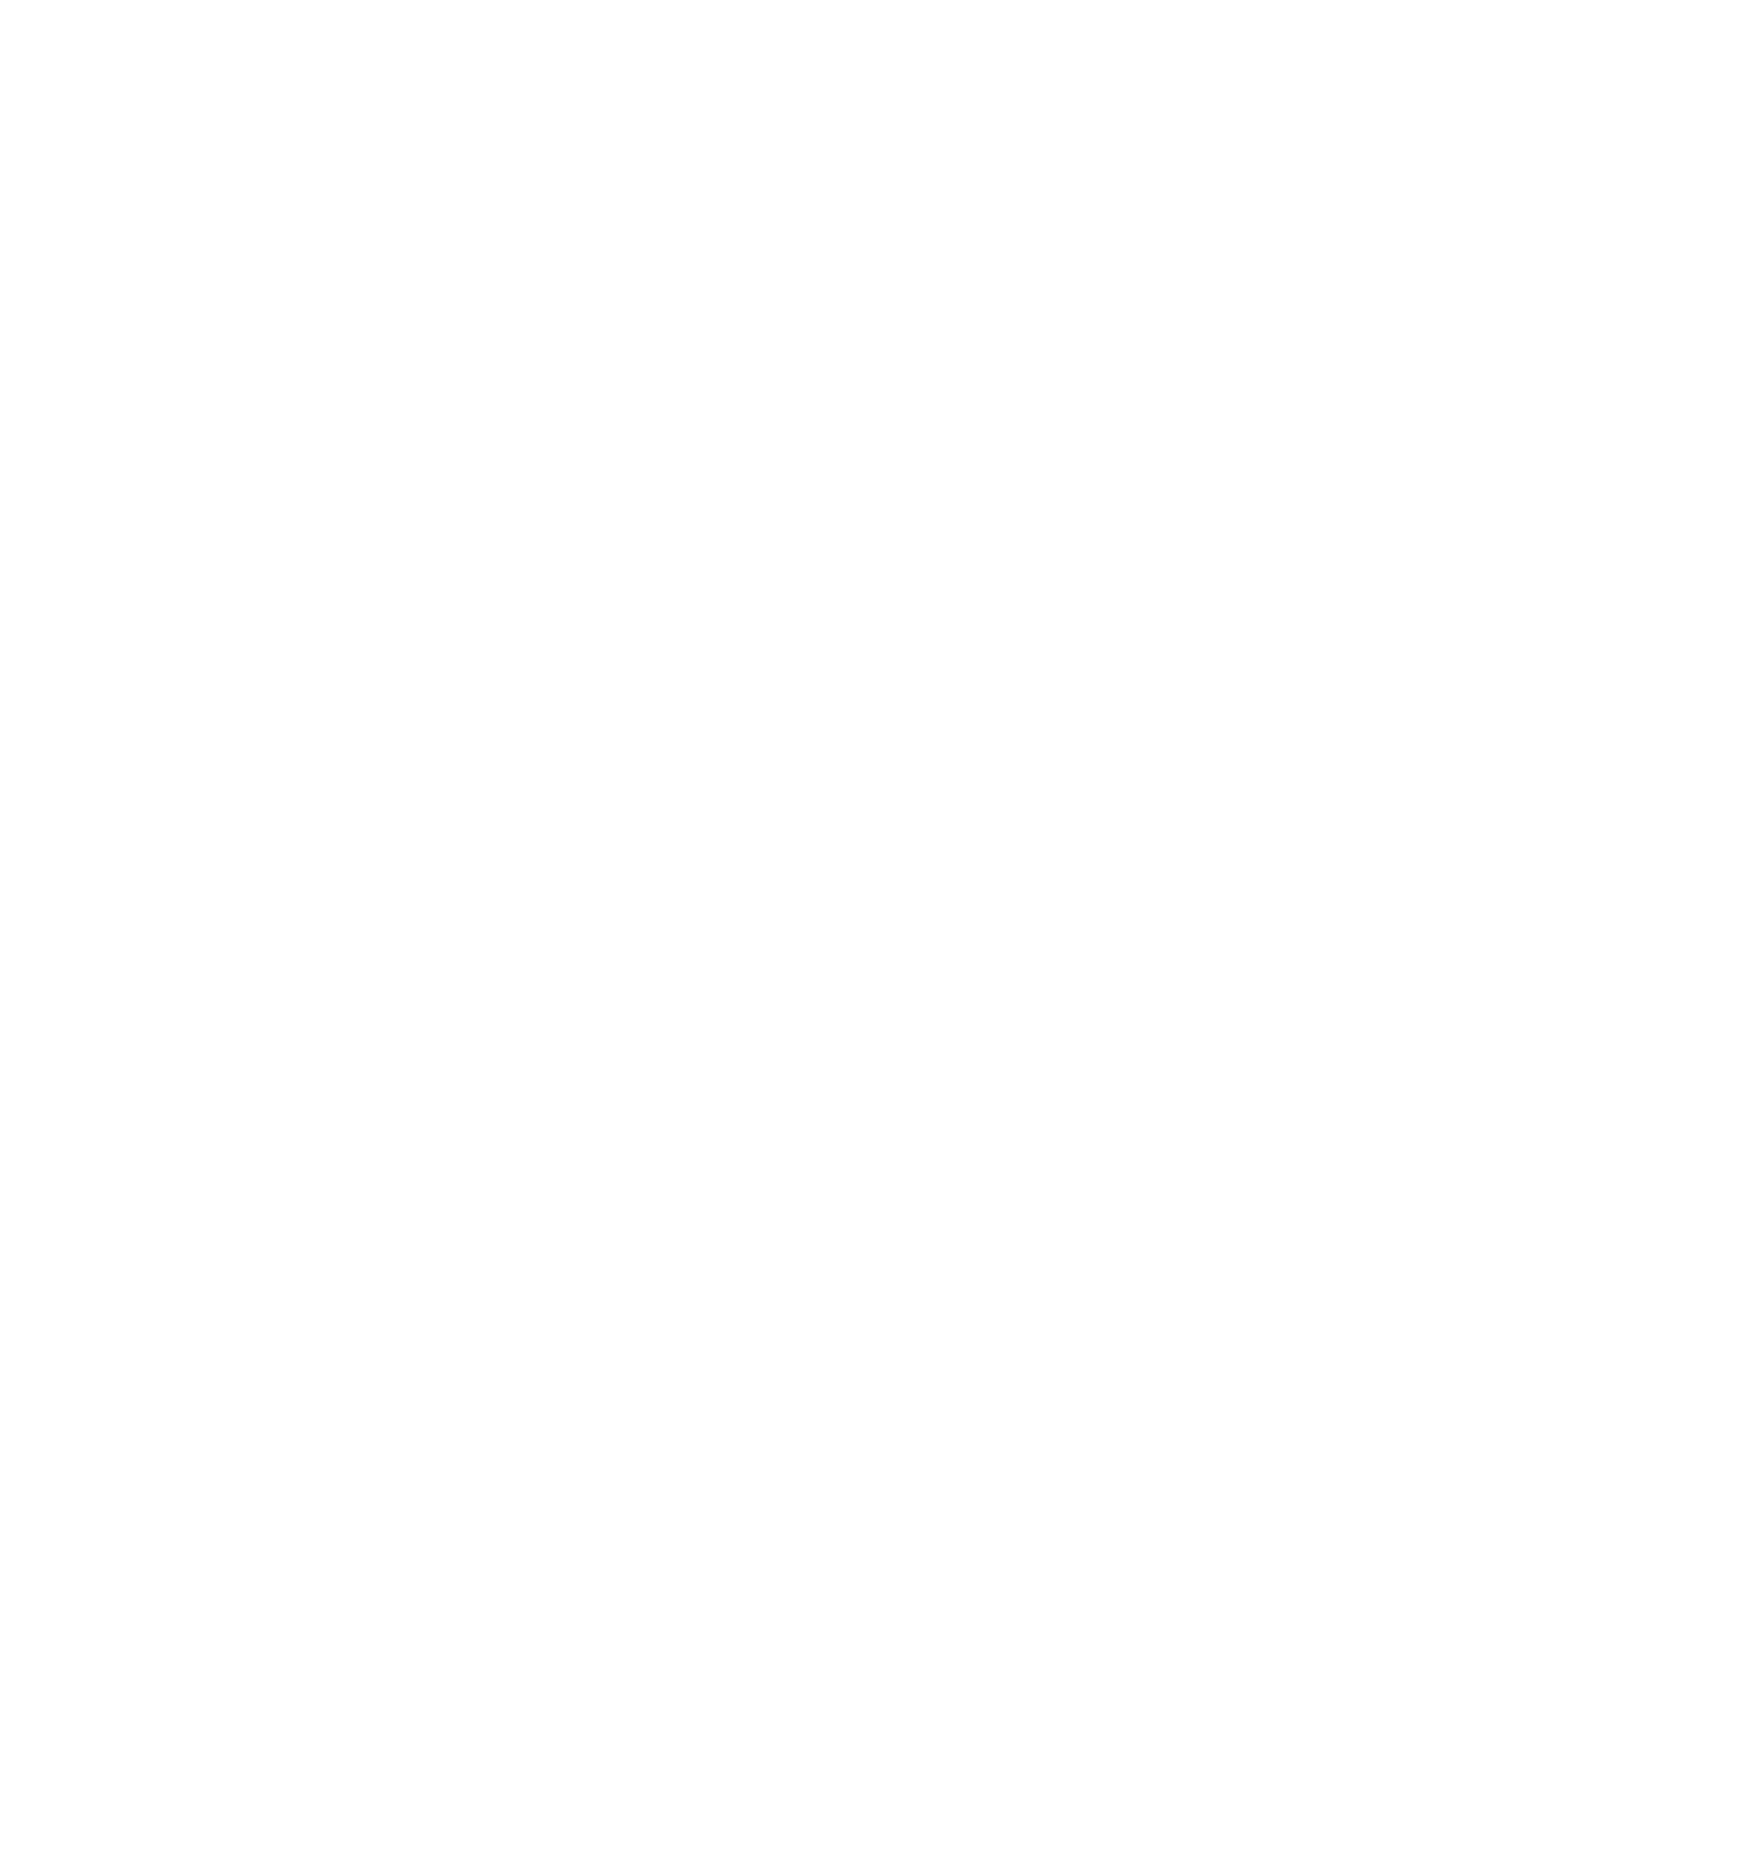 Principal Partner - Act Belong Commit